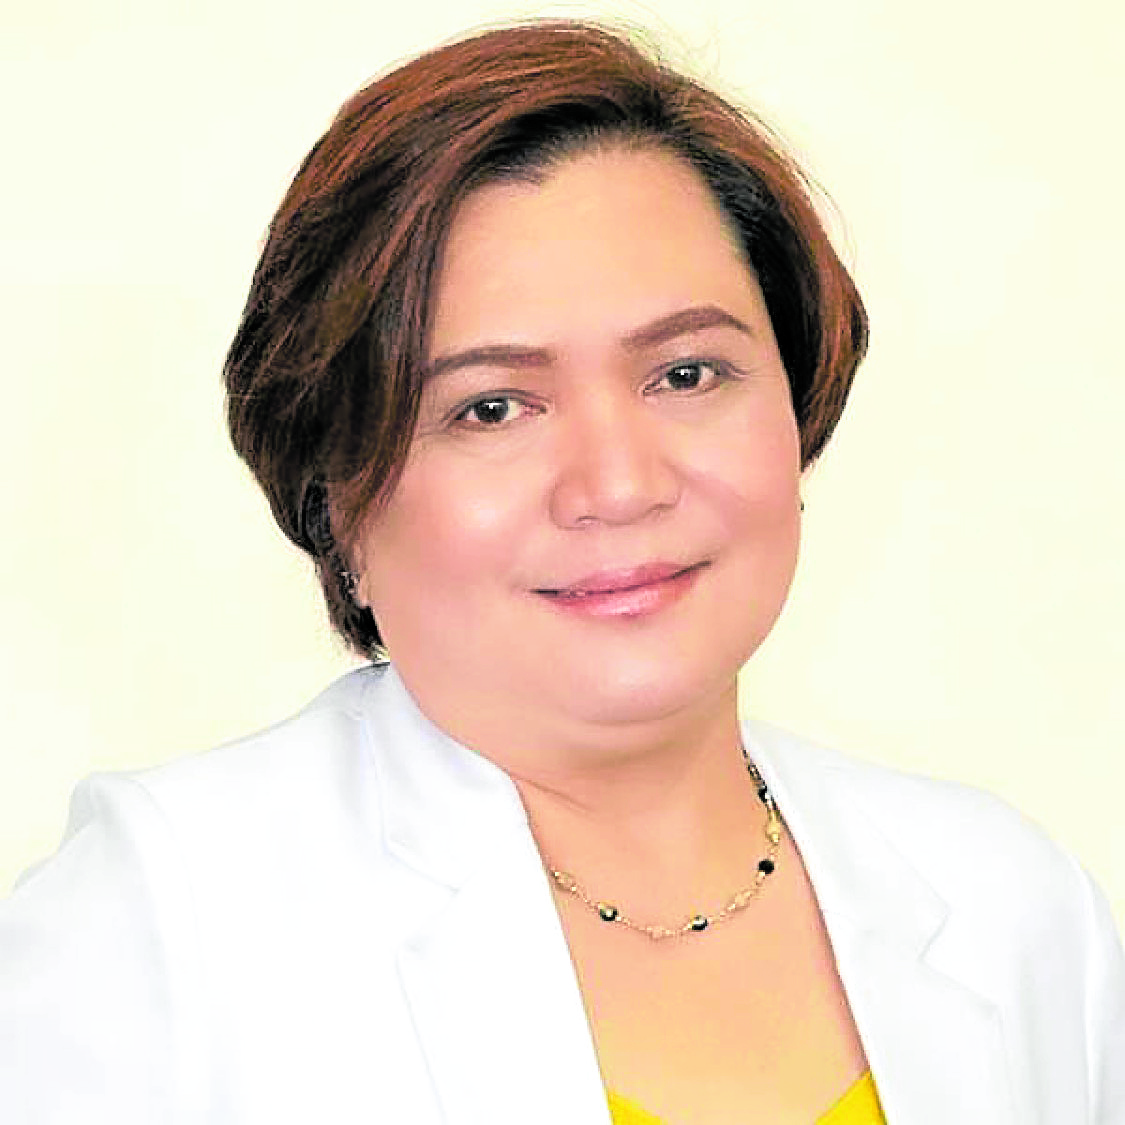 Dr. Susana Quiaoit